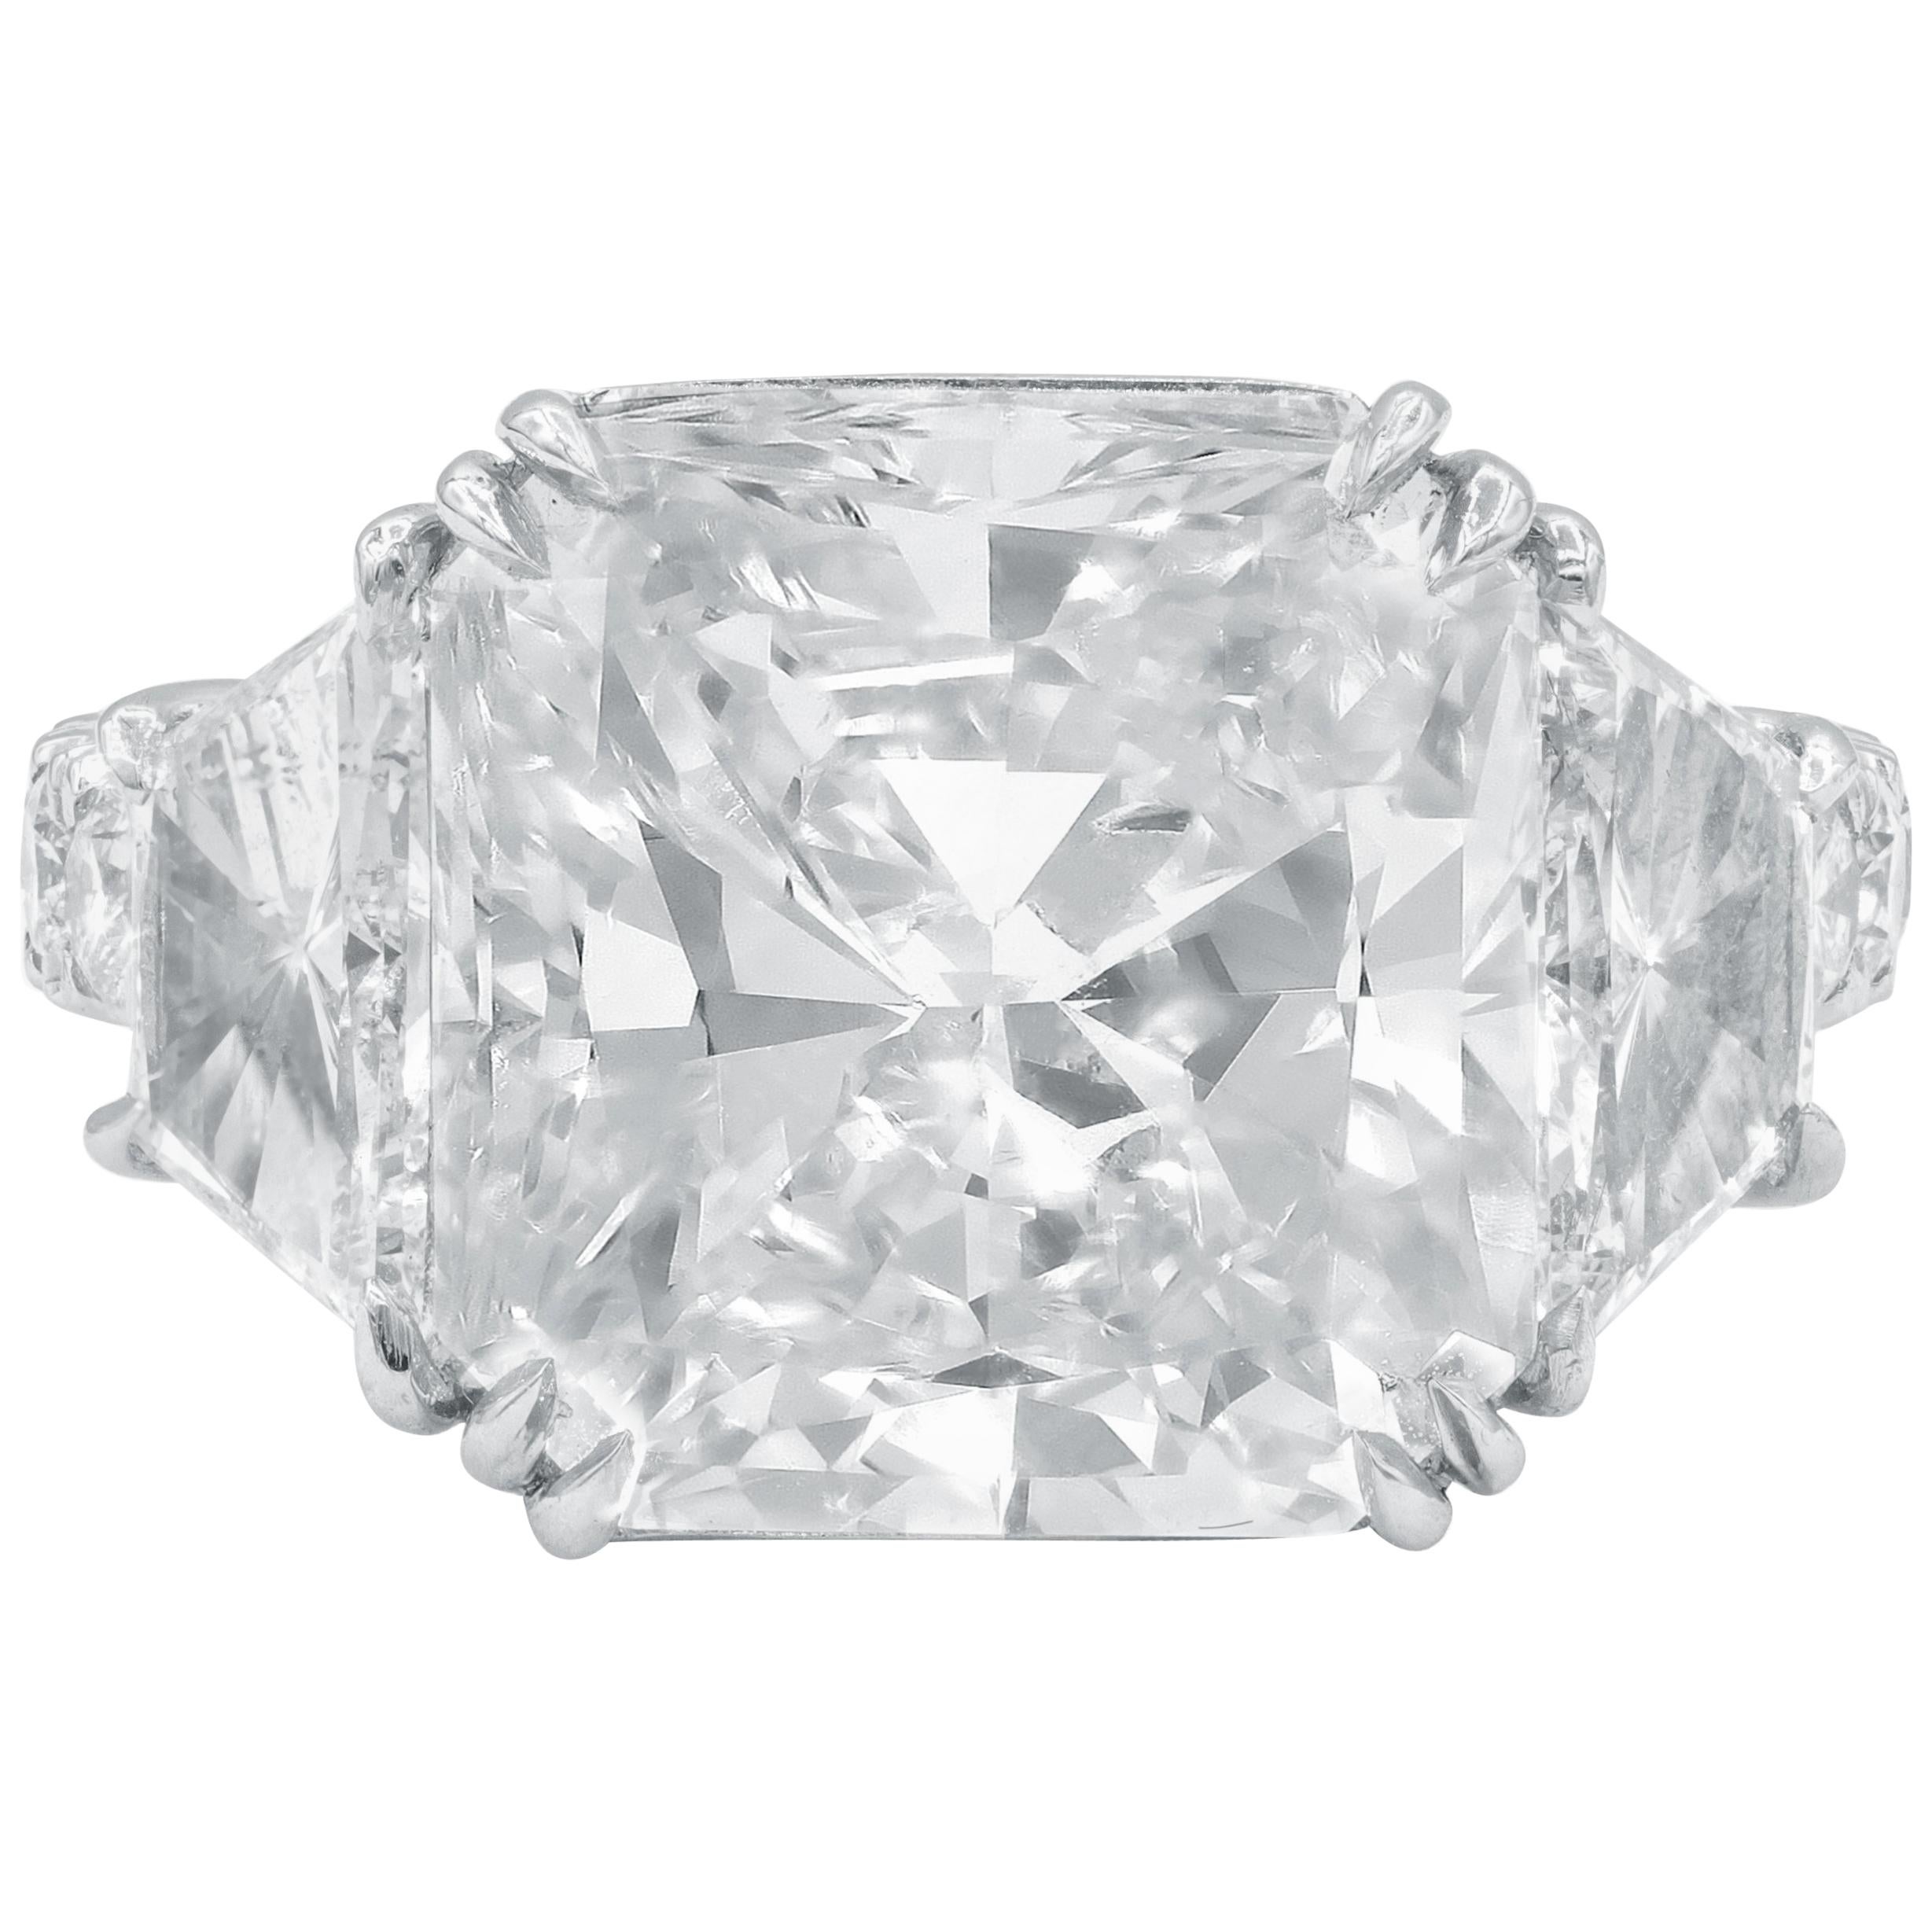 GIA Certified 10.08 Carat Radiant Cut Diamond Ring